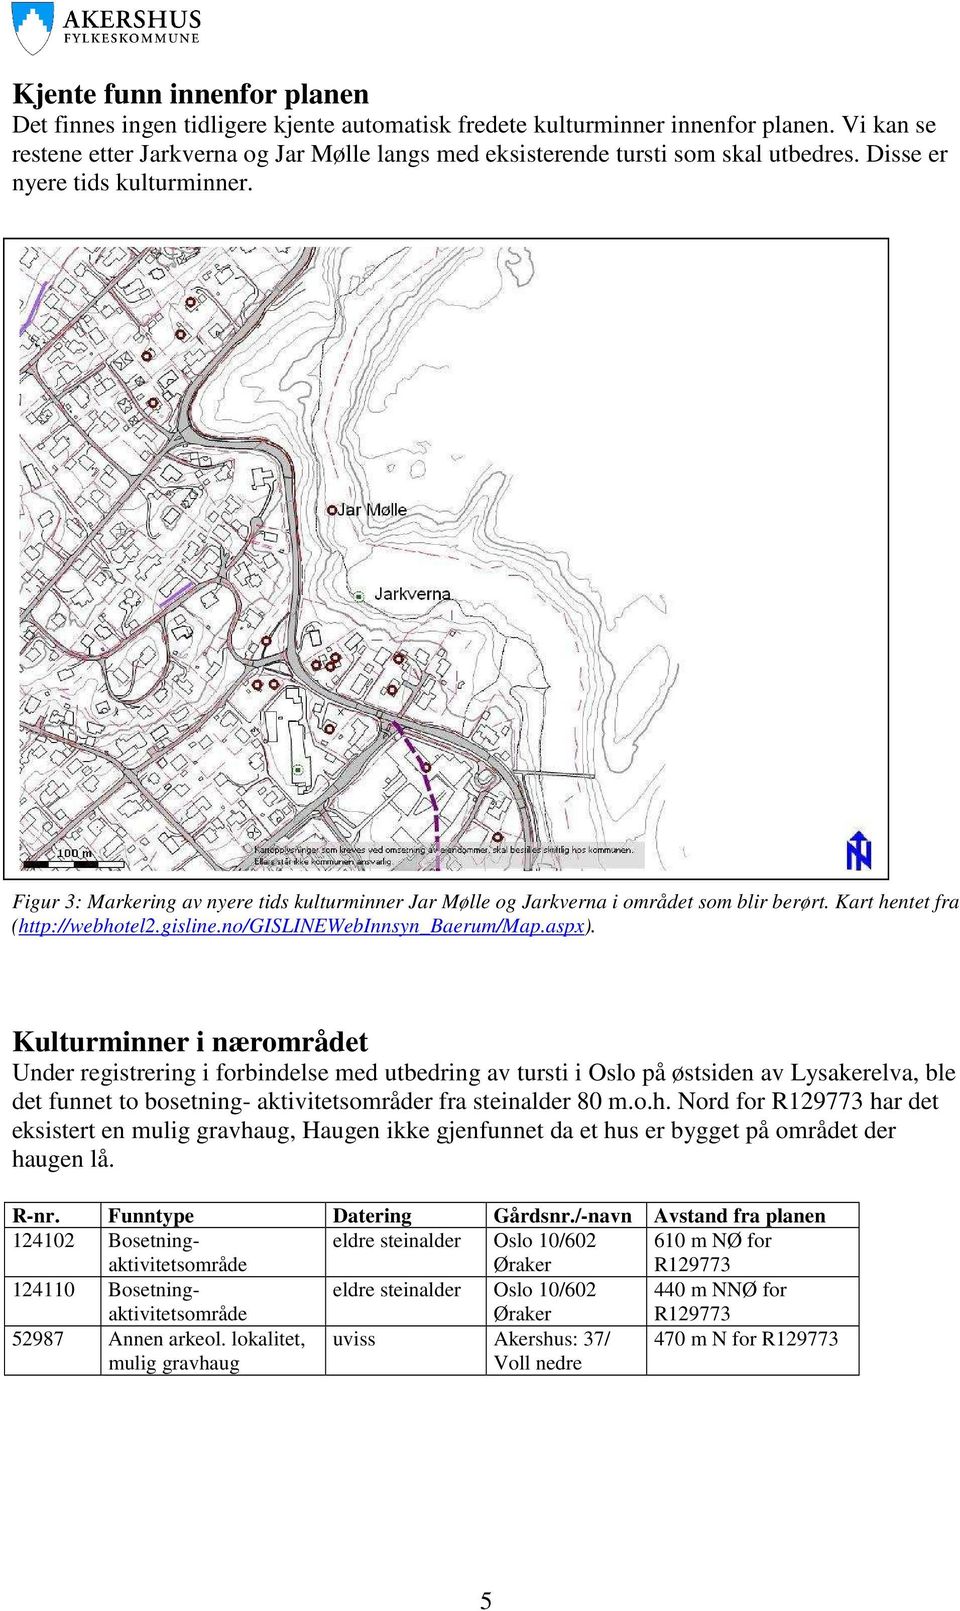 Figur 3: Markering av nyere tids kulturminner Jar Mølle og Jarkverna i området som blir berørt. Kart hentet fra (http://webhotel2.gisline.no/gislinewebinnsyn_baerum/map.aspx).